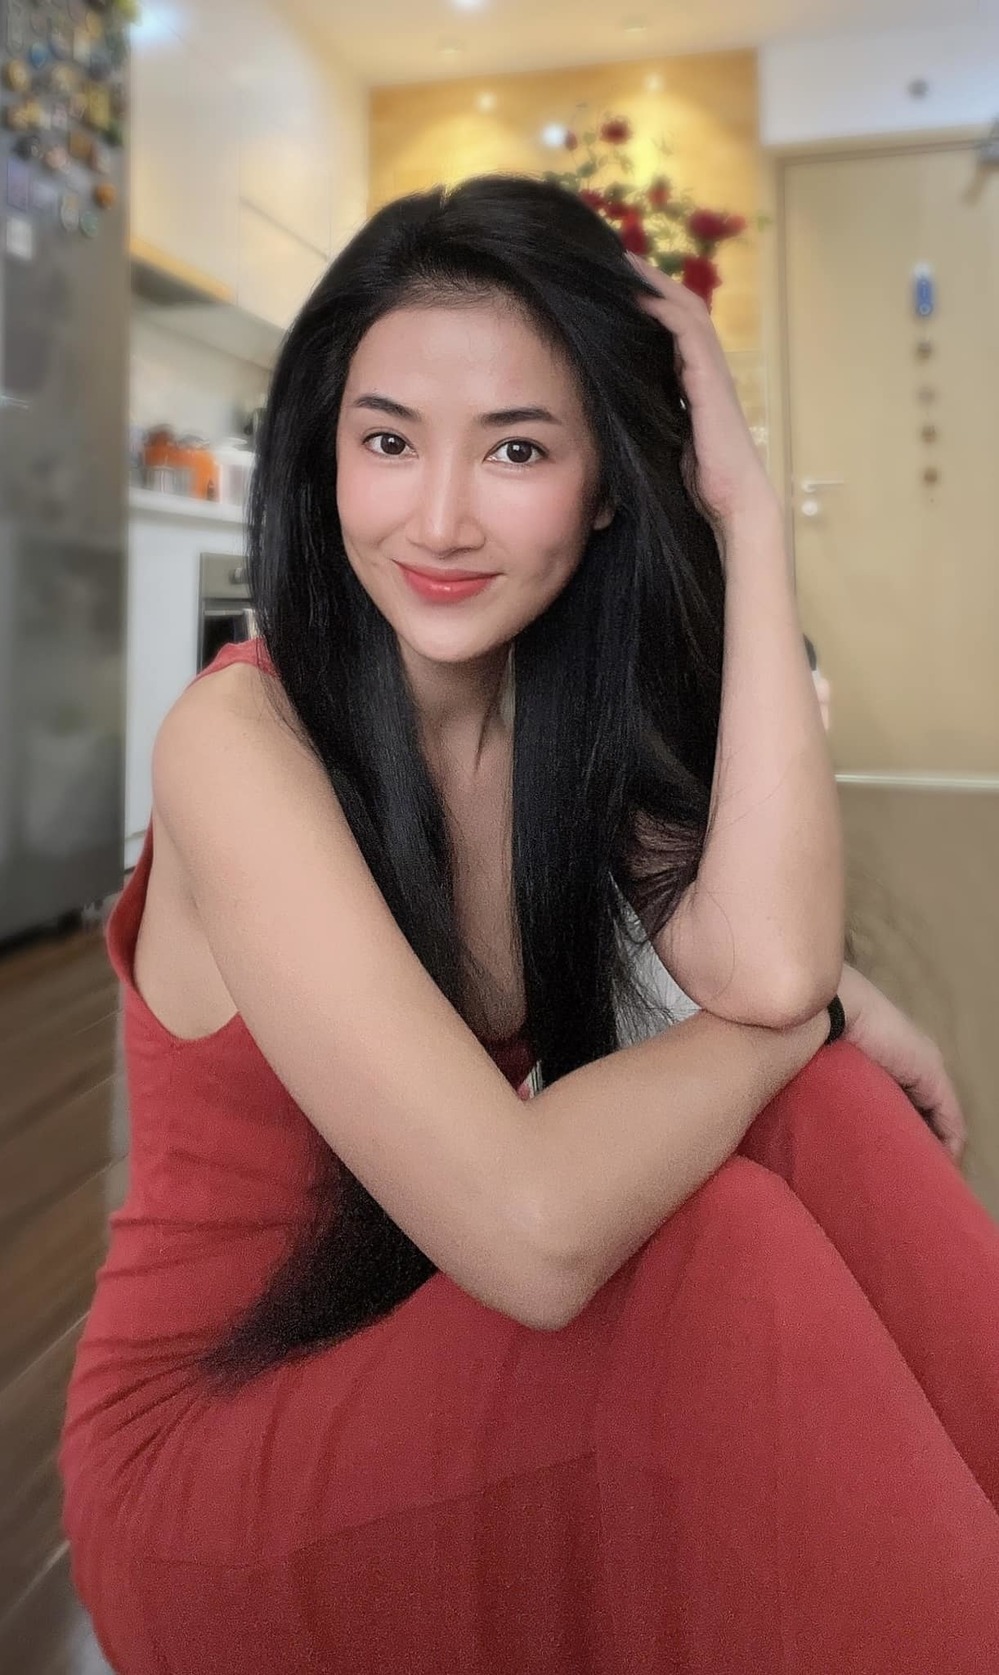  
Cận vẻ xinh đẹp của Quỳnh Lam khiến netizen lầm tưởng. (Ảnh: FB Hoàng Quỳnh Lam)